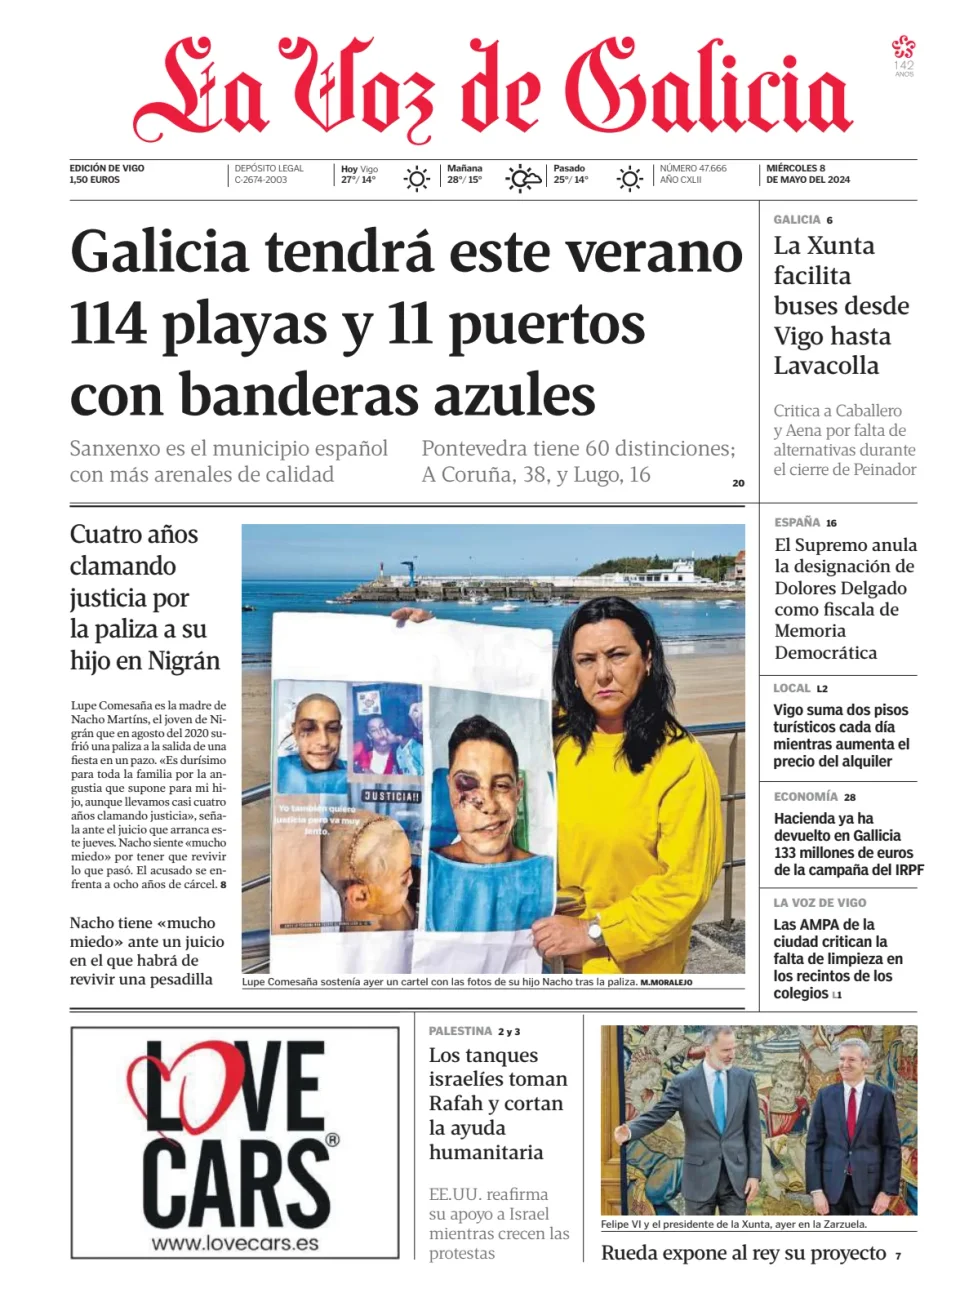 La Voz de Galicia (Vigo)